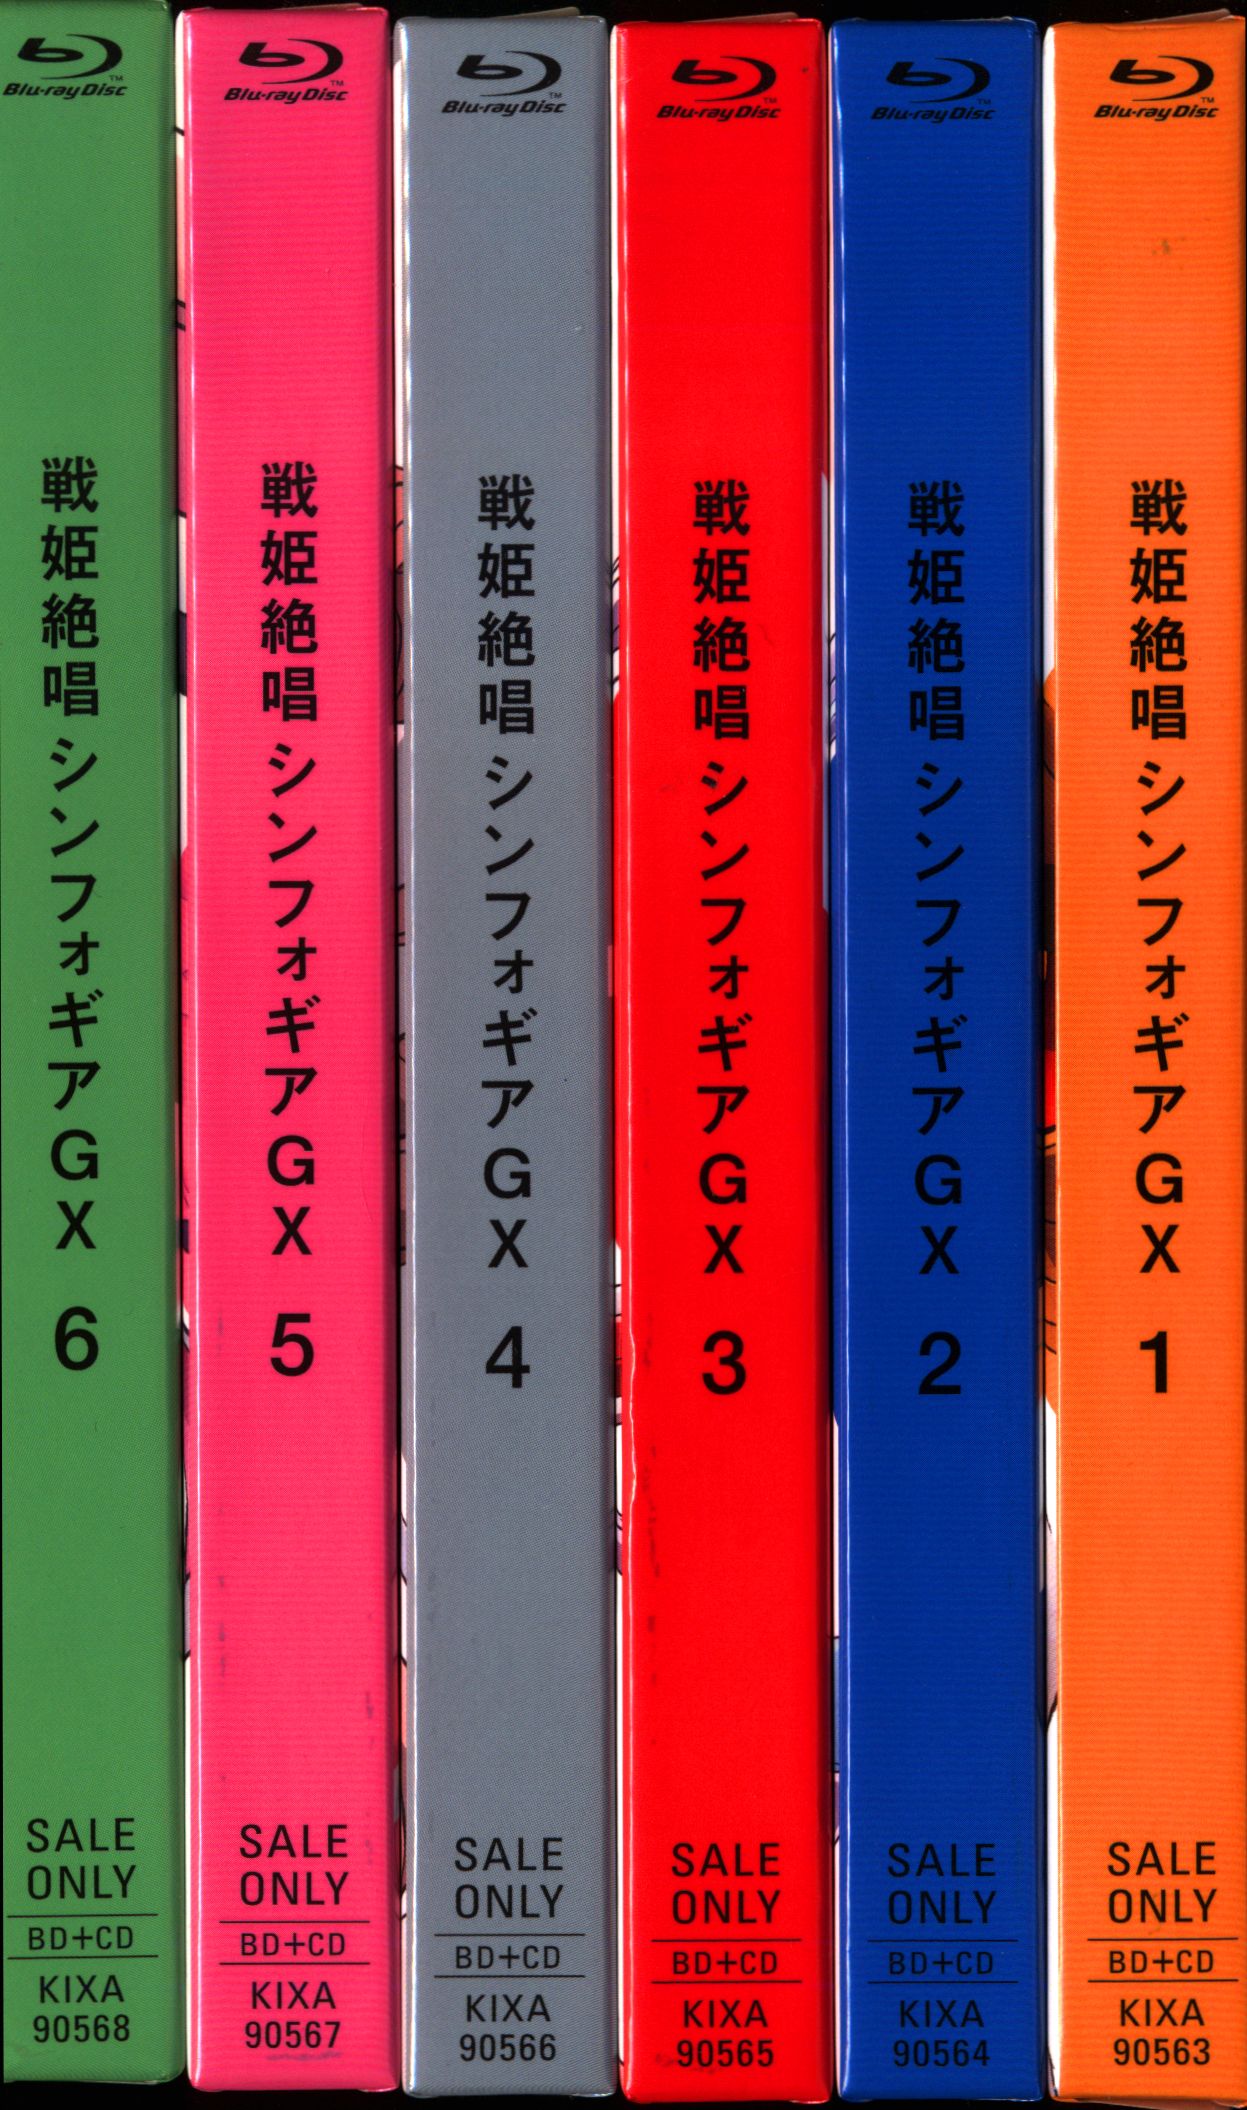 アニメBlu-ray 戦姫絶唱シンフォギアGX 期間限定版全6巻セット